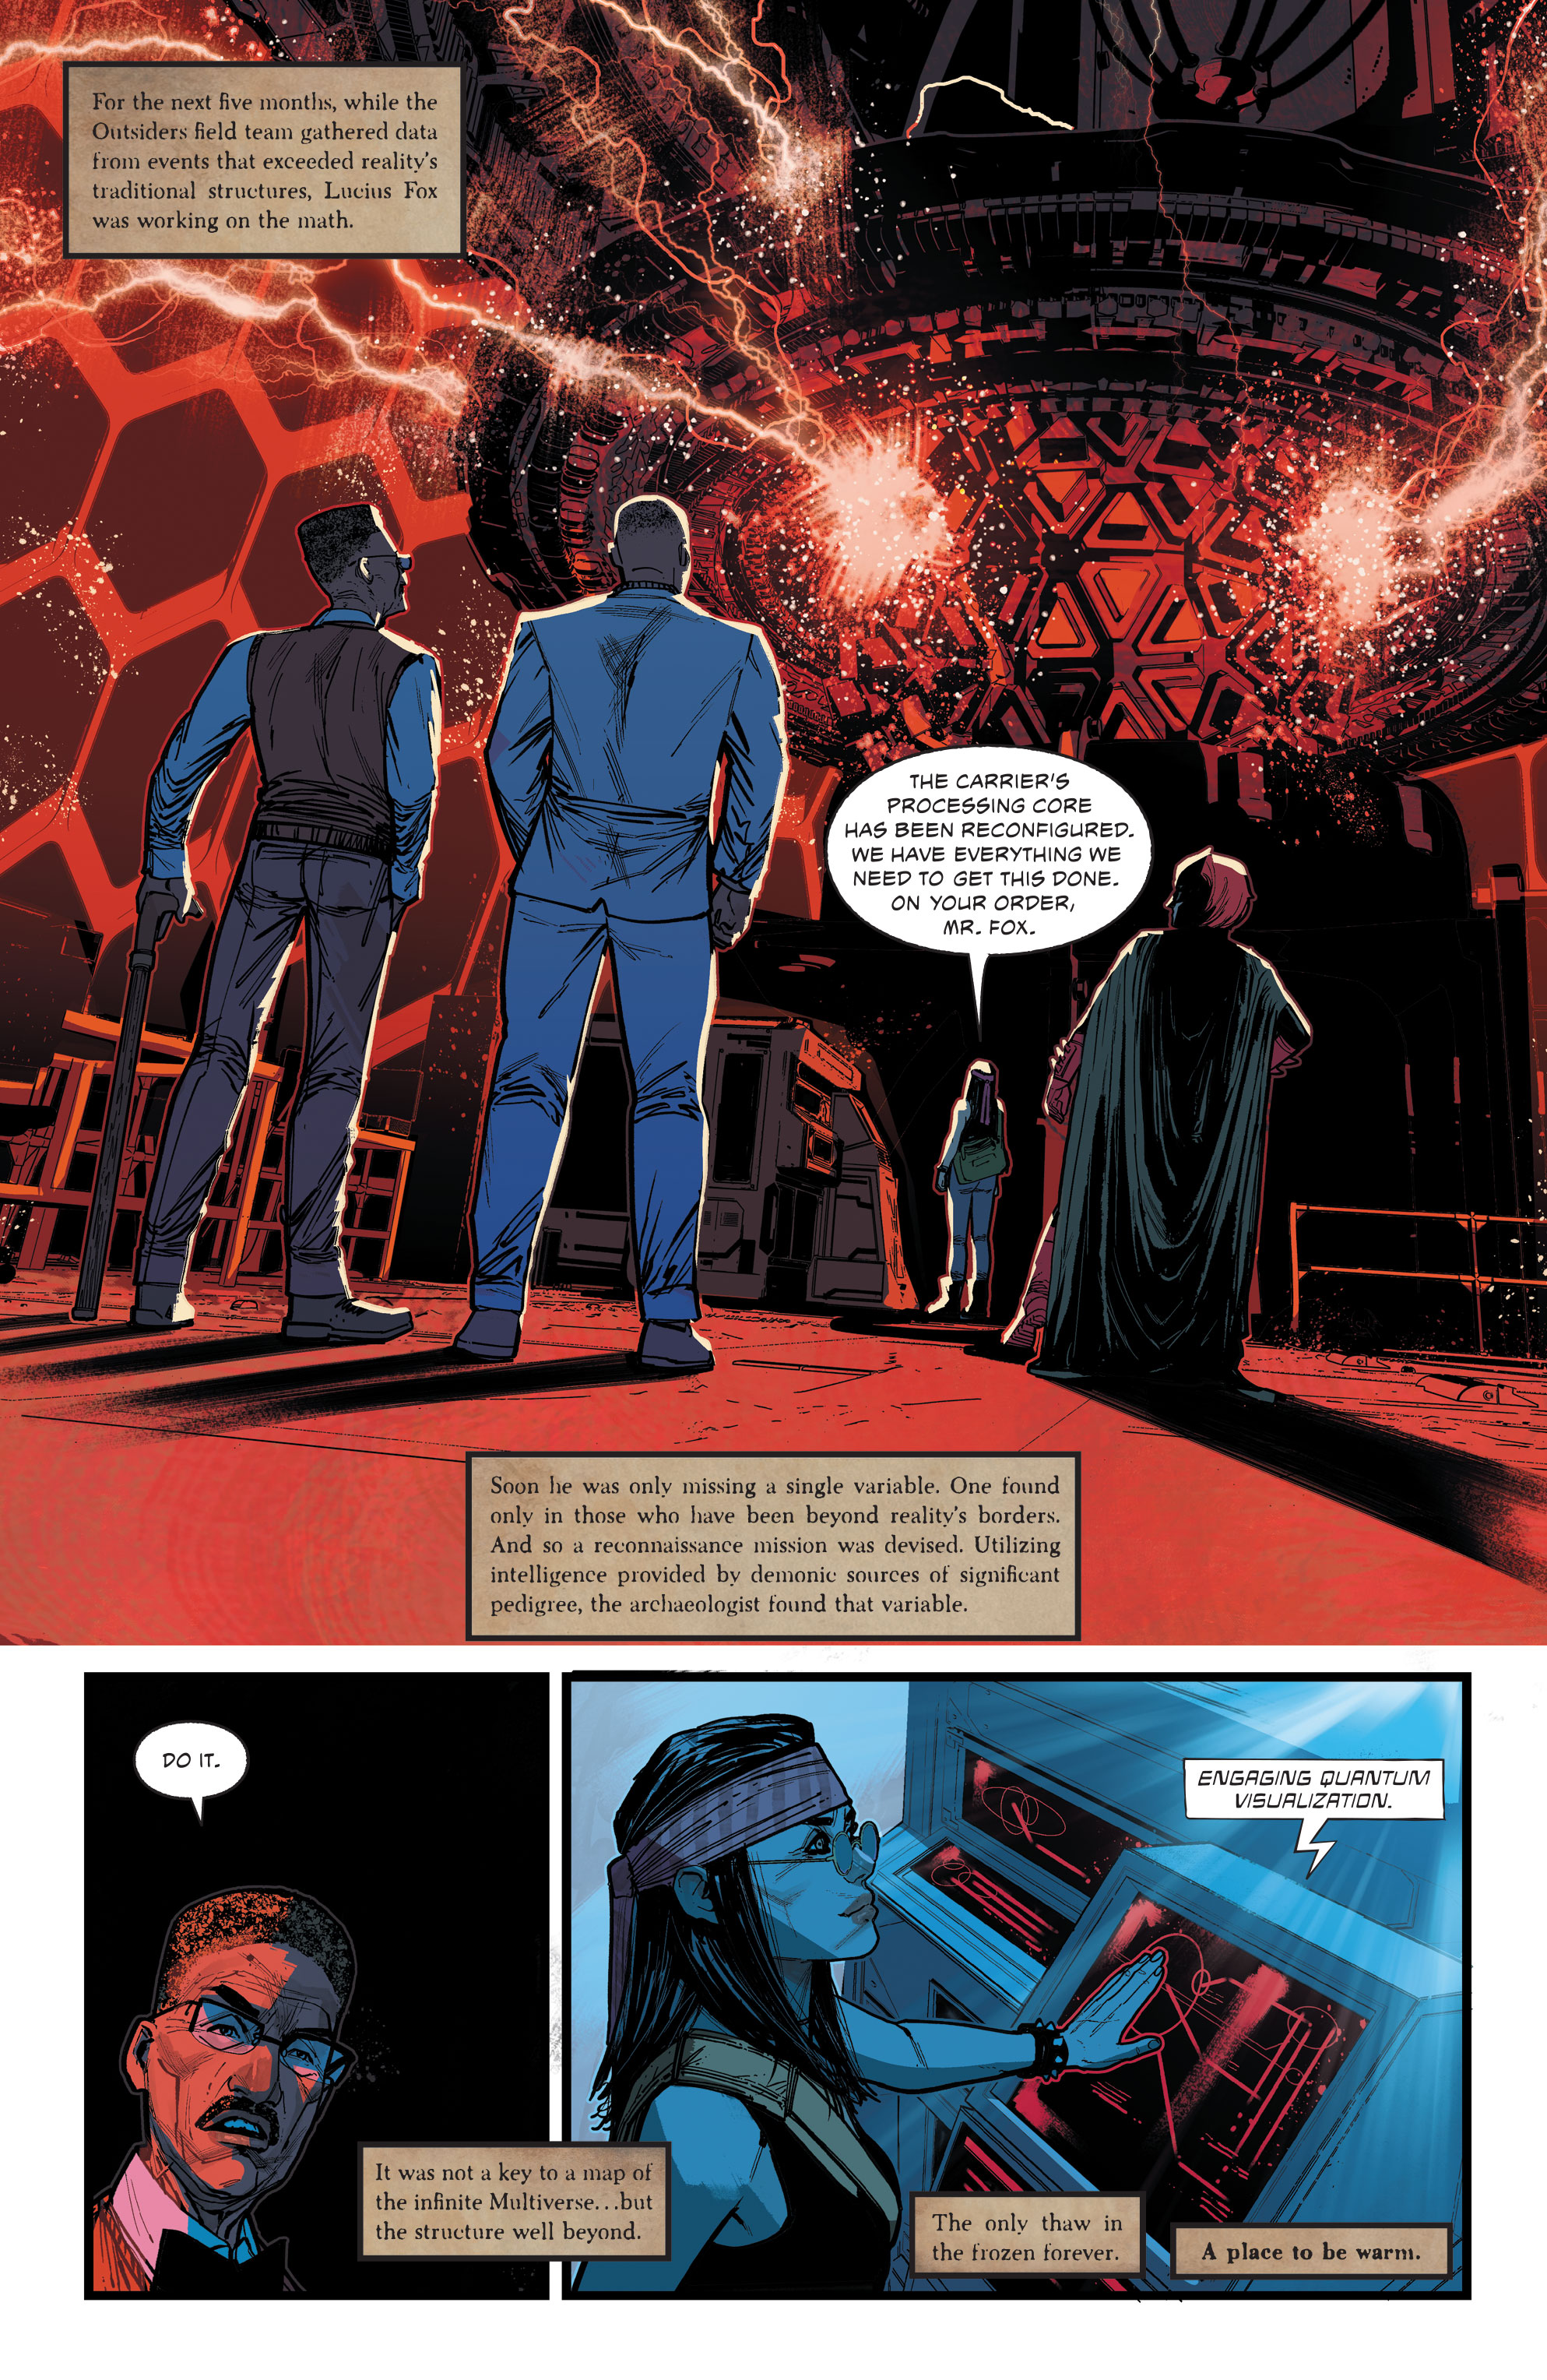 Главный персонаж официально вернулся в DC благодаря революционной проблеме «Аутсайдеры».